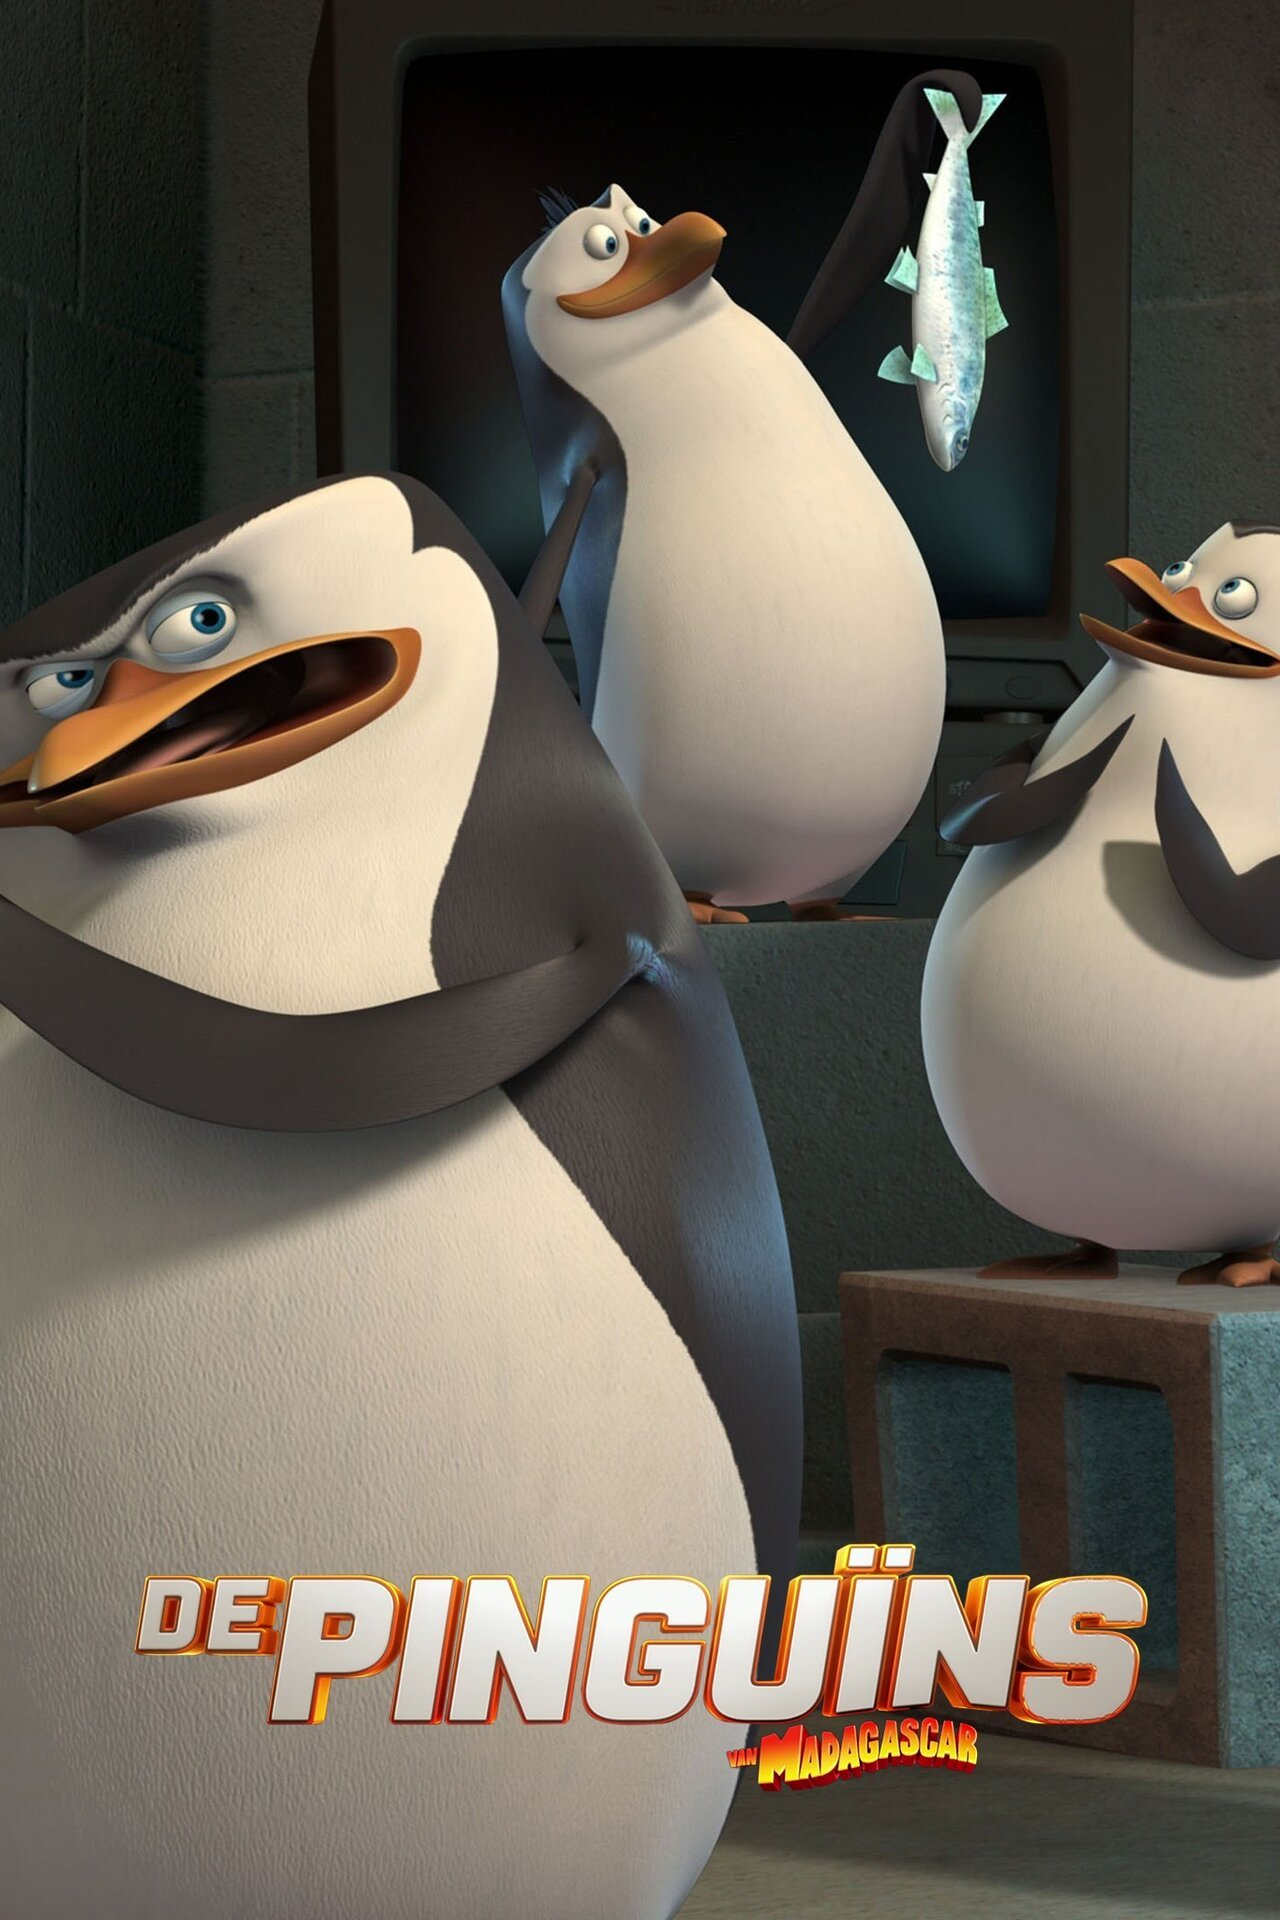 De Pinguïns van Madagascar